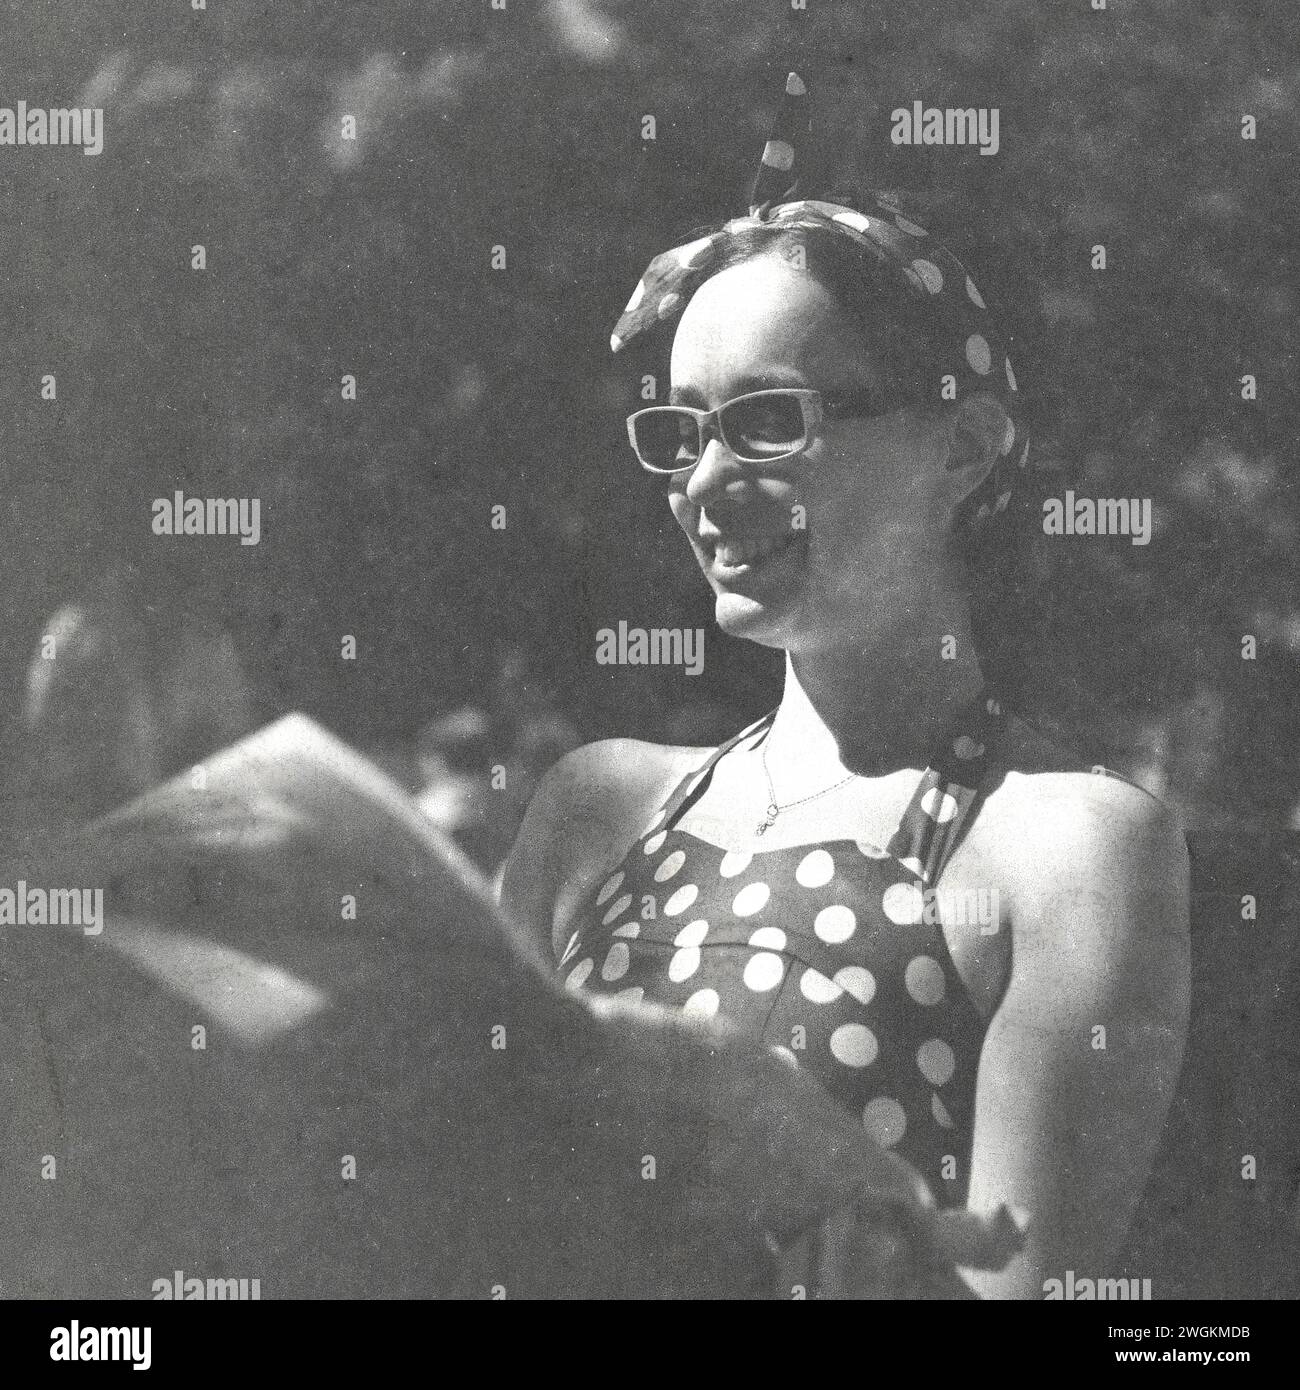 Goodwood Revival 2023 - images prises sur un vieux Rolleiflex sur film Kodak qui a expiré en 1985. Banque D'Images